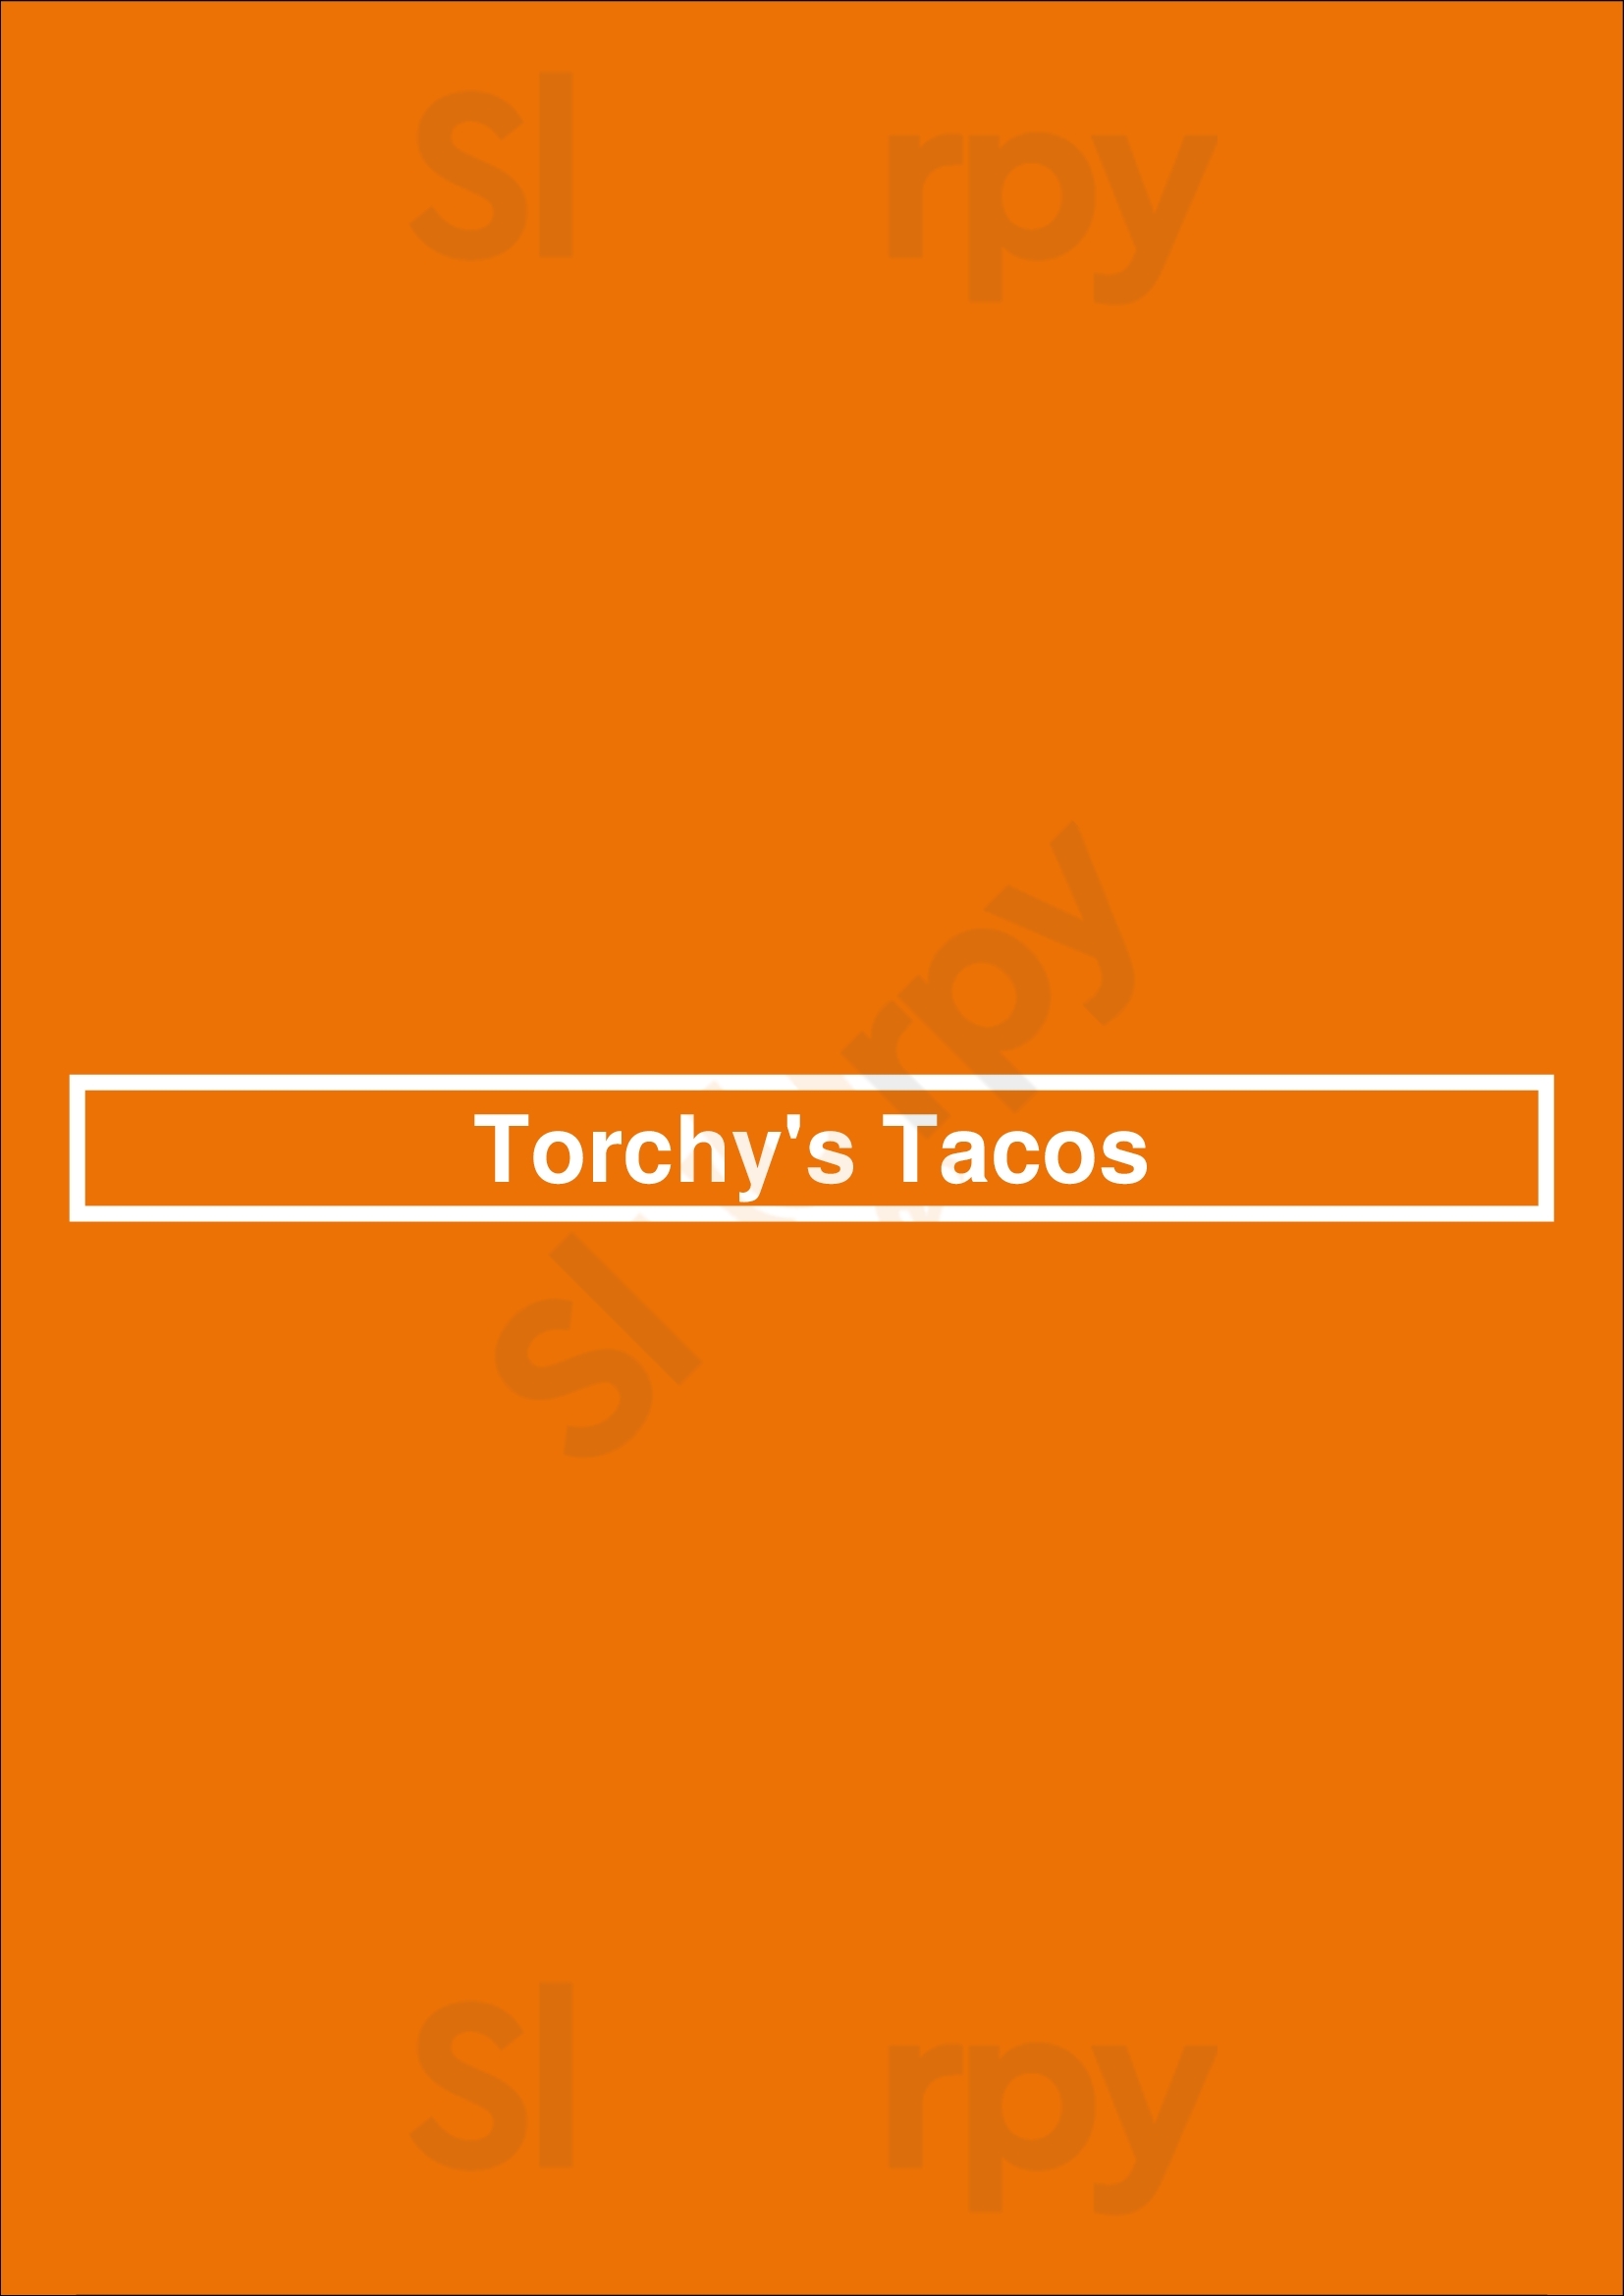 Torchys Tacos Cypress Menu - 1